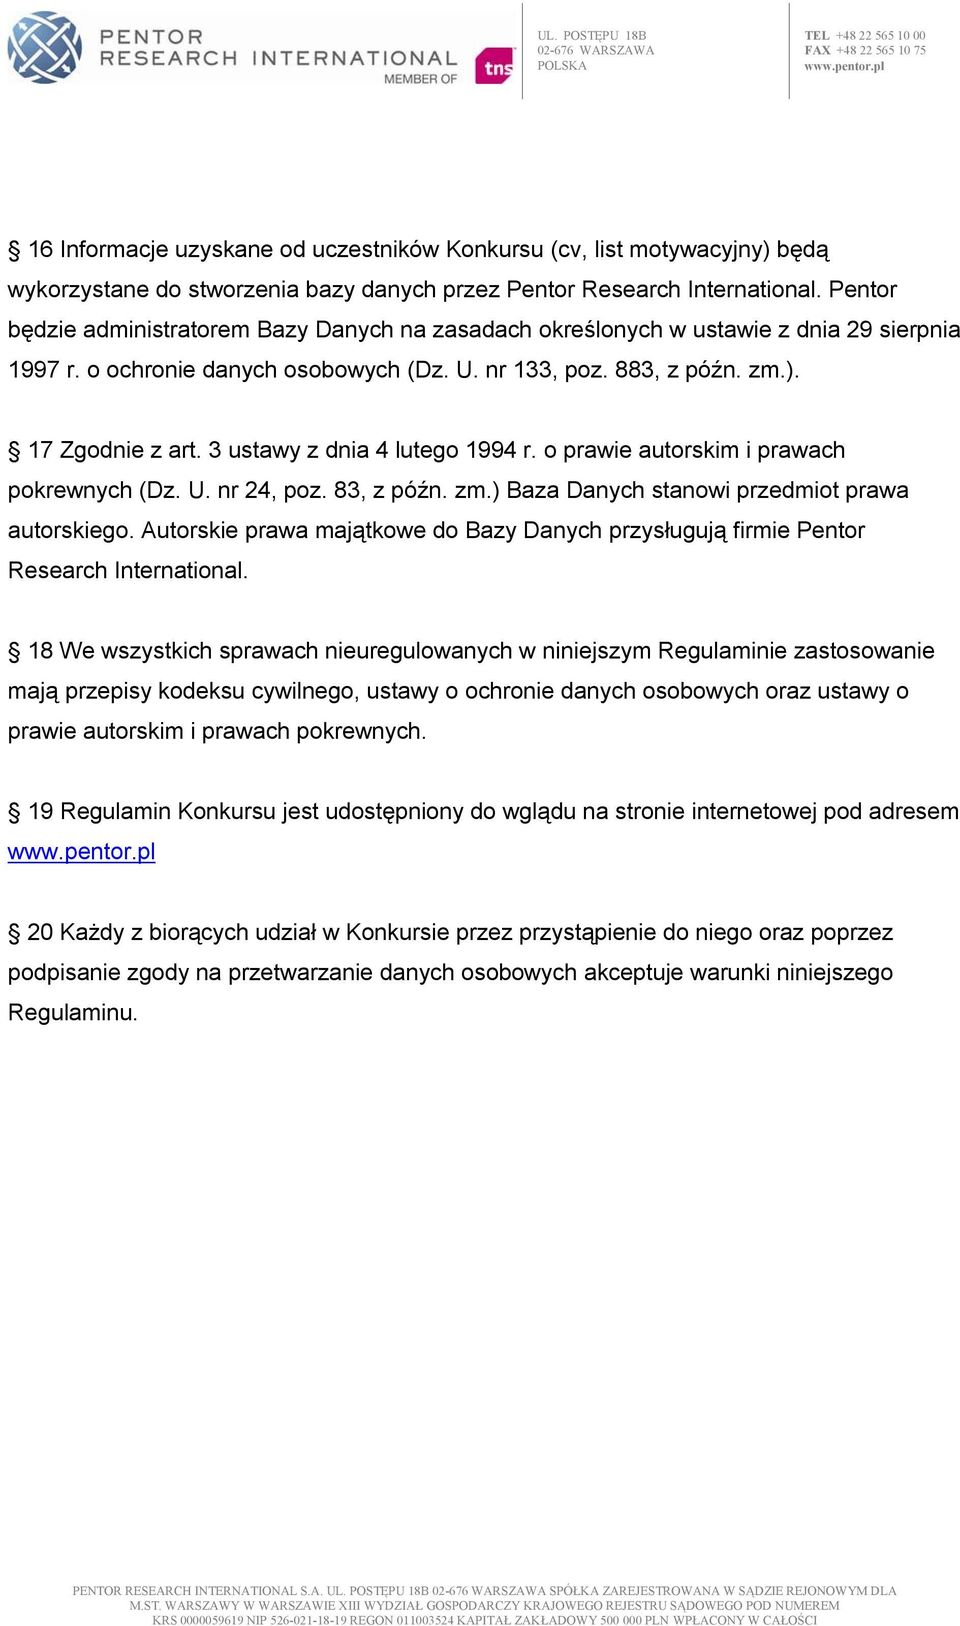 3 ustawy z dnia 4 lutego 1994 r. o prawie autorskim i prawach pokrewnych (Dz. U. nr 24, poz. 83, z późn. zm.) Baza Danych stanowi przedmiot prawa autorskiego.